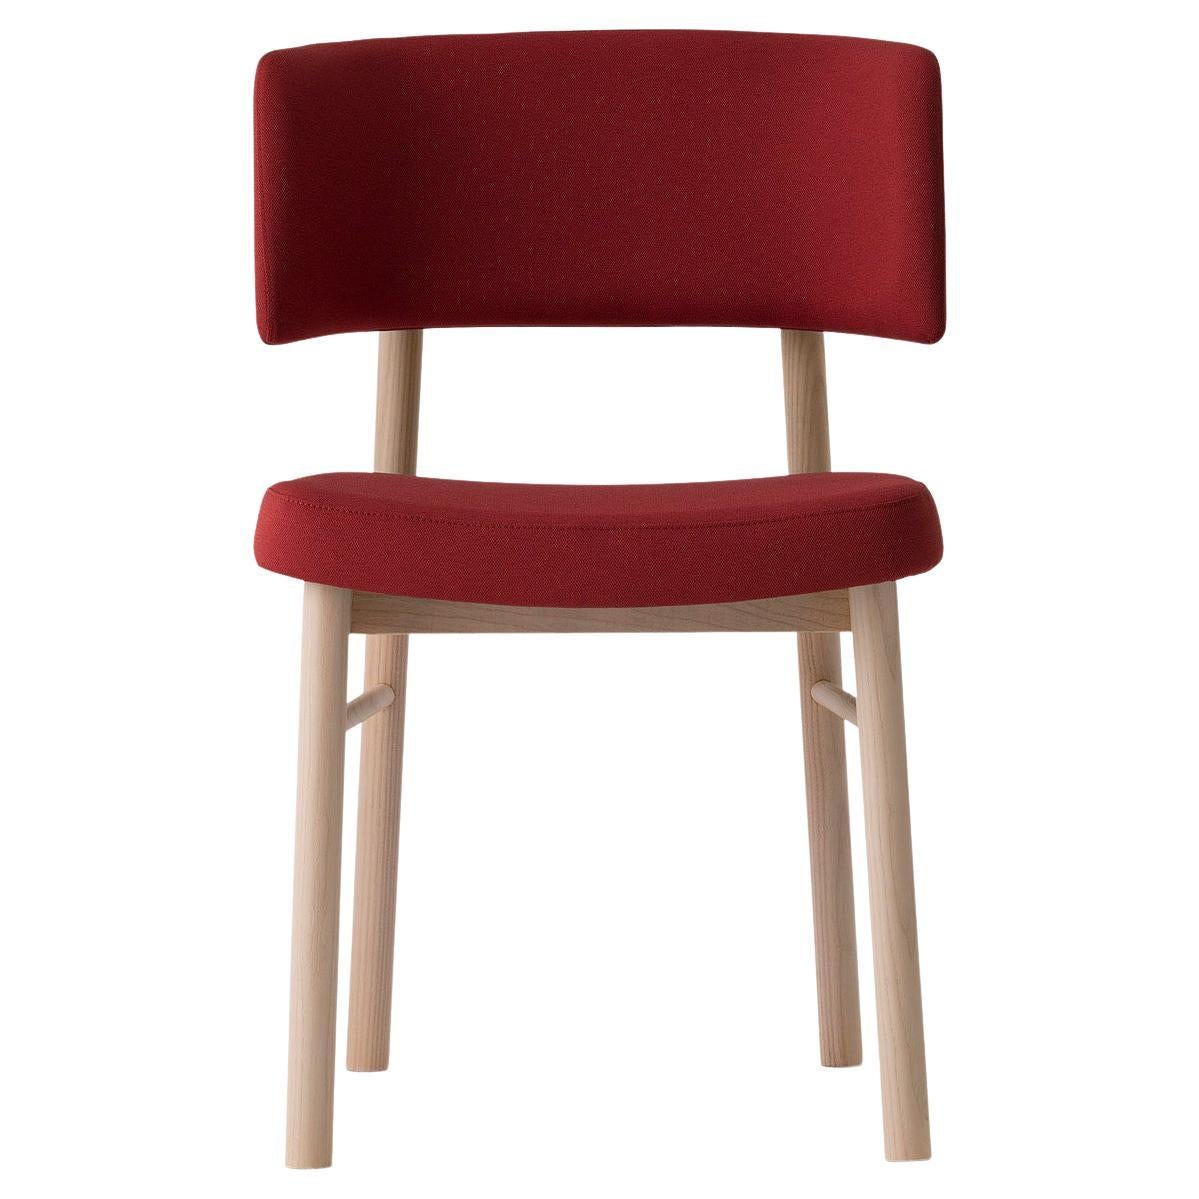 Chaise Marlen 0151 LE rouge, bleue, verte, grise, chaise, Vivre, Maison, Contrat, Bois